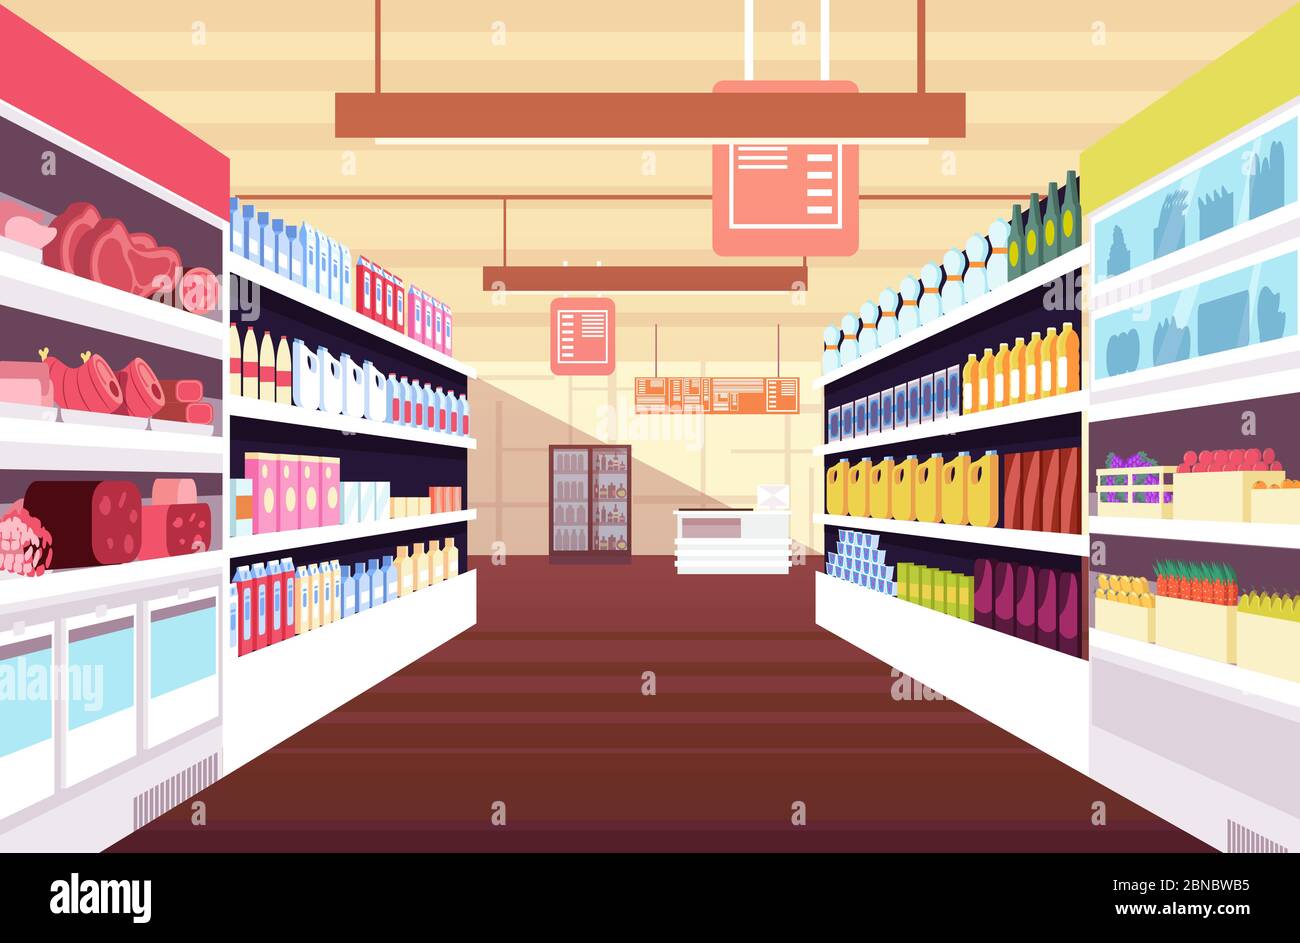 Supermercado interior con estantes de productos completos. Concepto vectorial de comercio minorista y consumismo. Ilustración de supermercado y tienda, interior de supermercado Ilustración del Vector